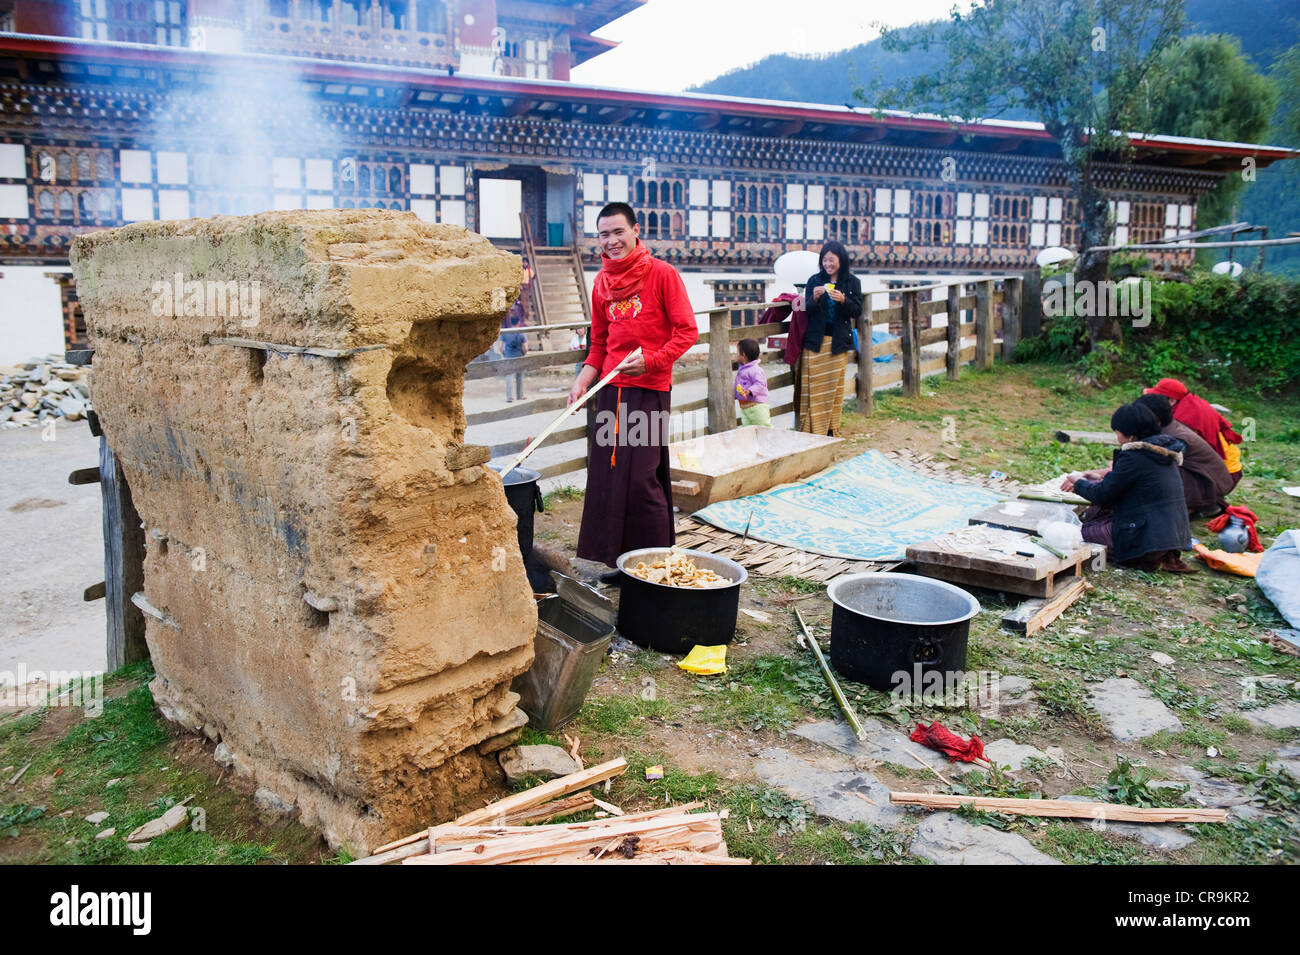 Gangtey Gompa, Monastère de la vallée de Phobjikha, Bhoutan, Asie Banque D'Images